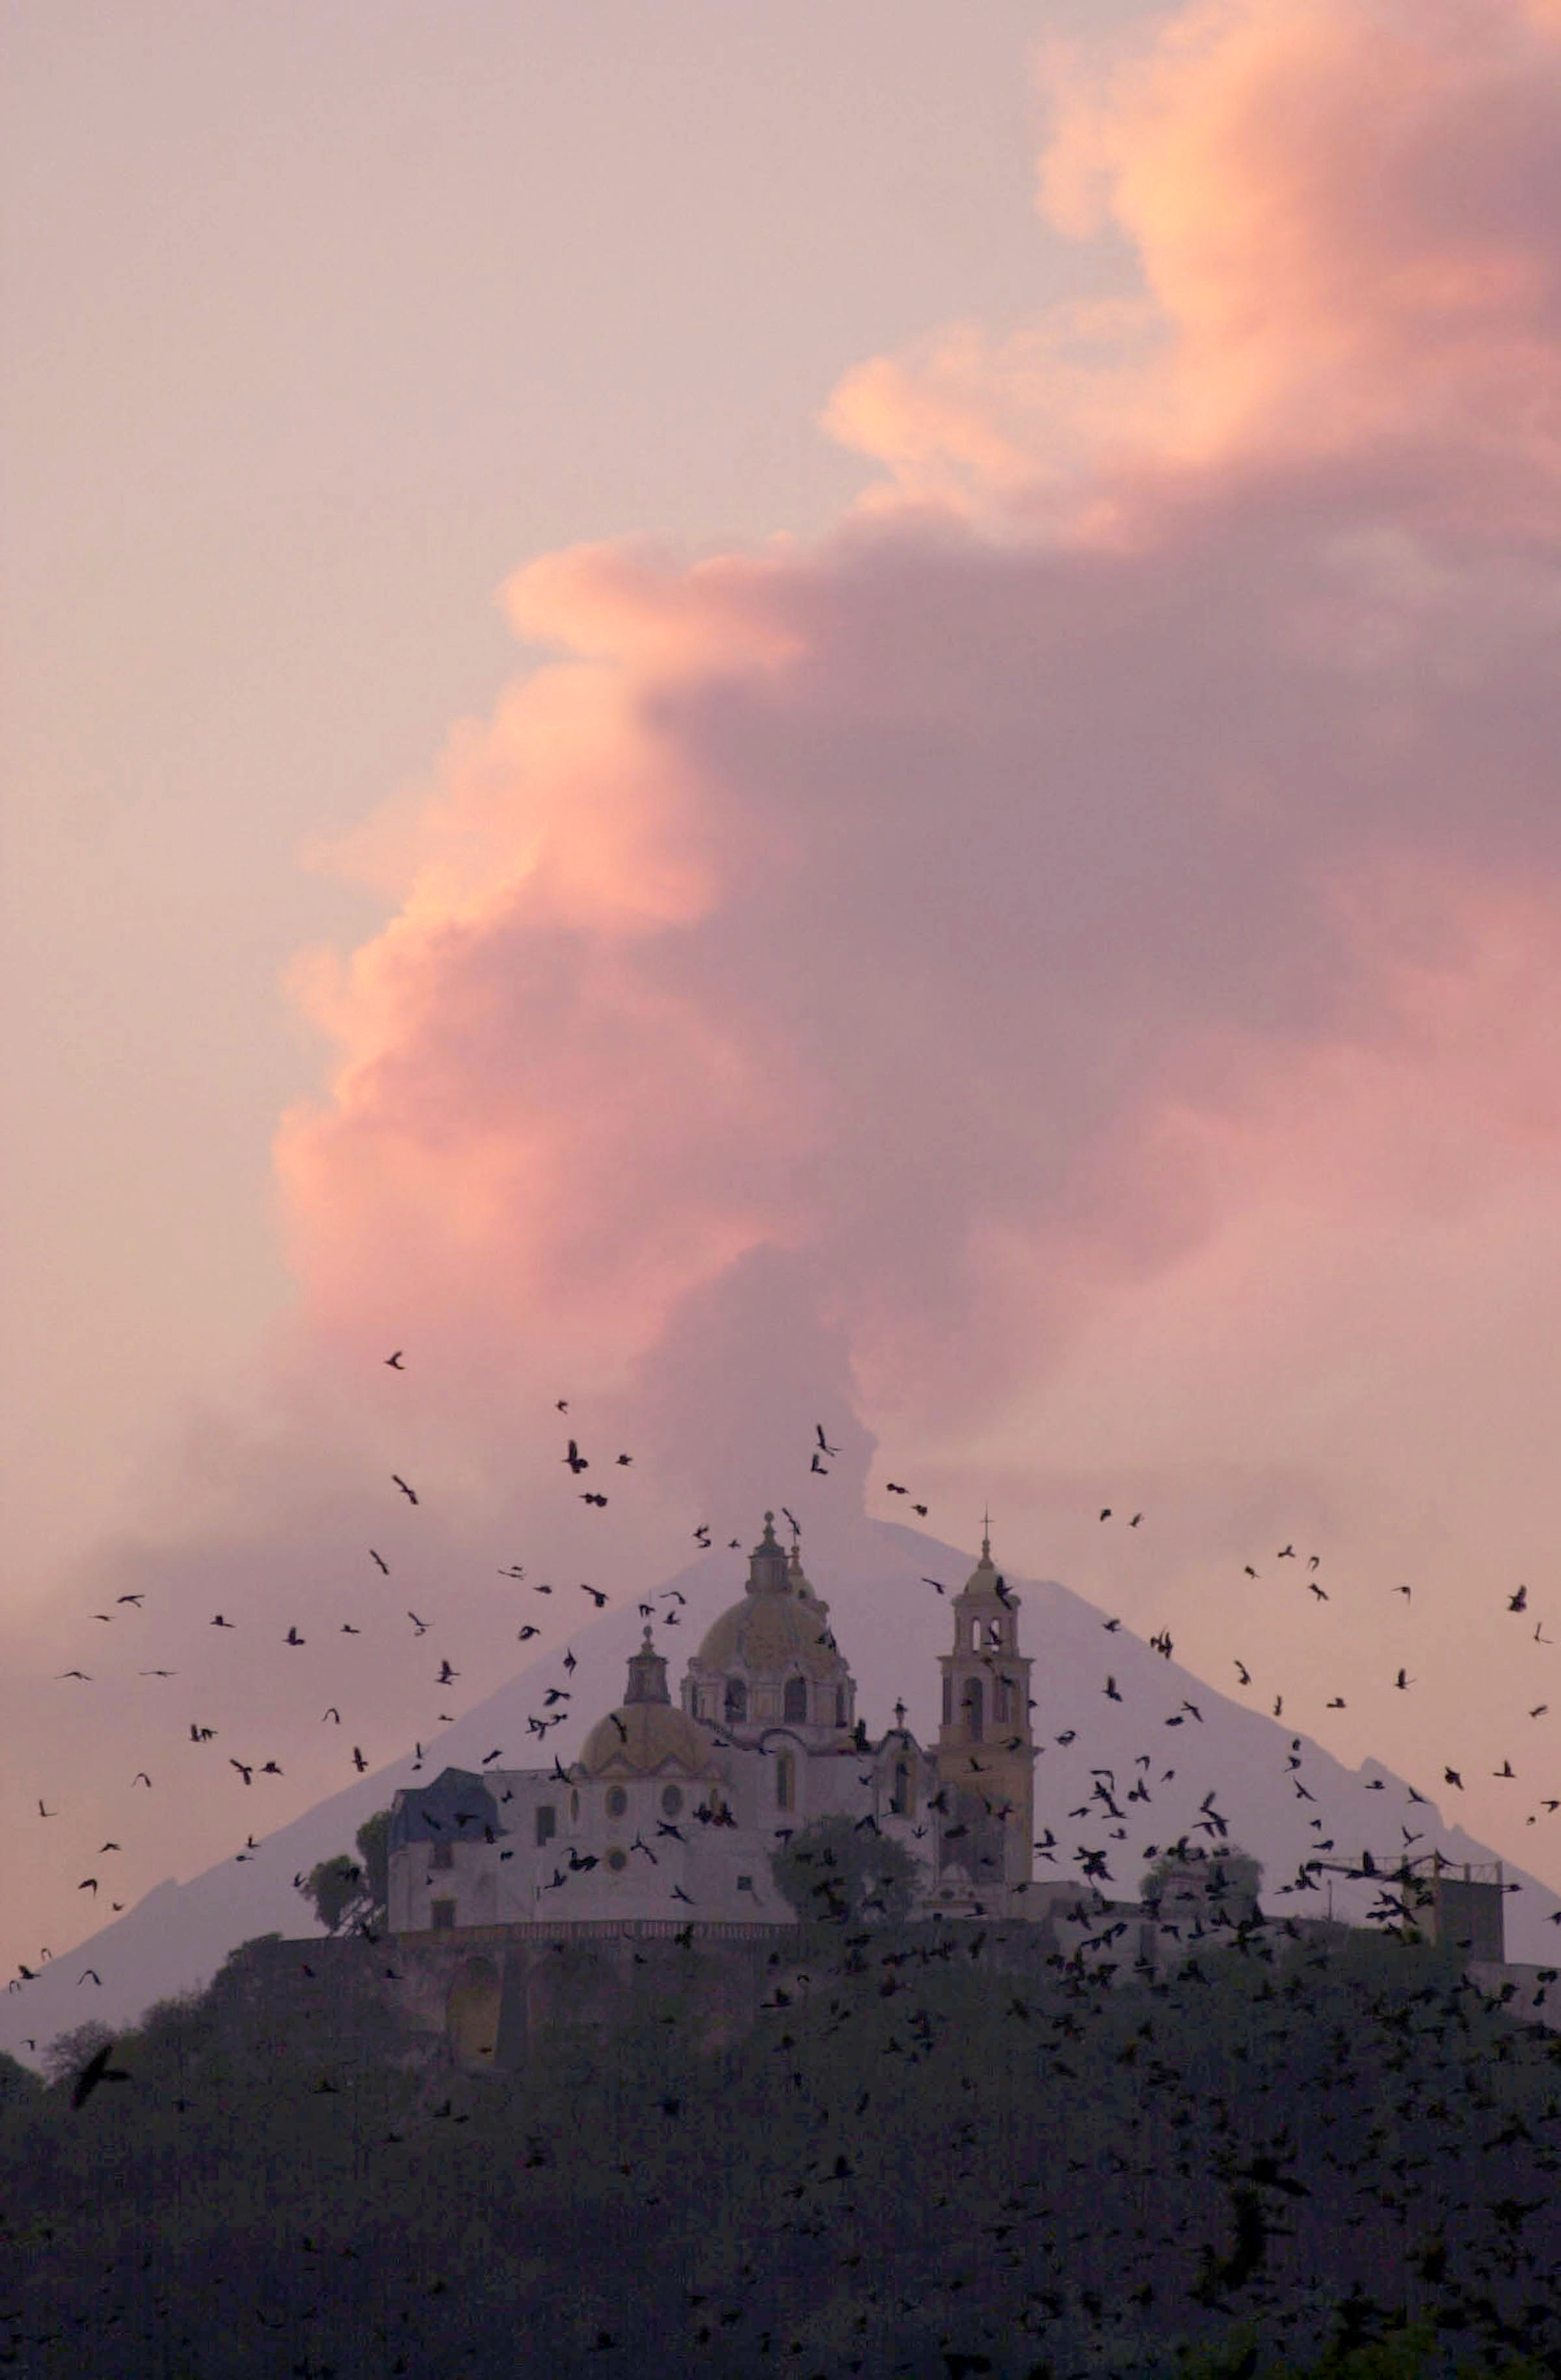 ¡Pendientes de Don Goyo! Se espera más caída de ceniza por explosiones del Popocatépetl